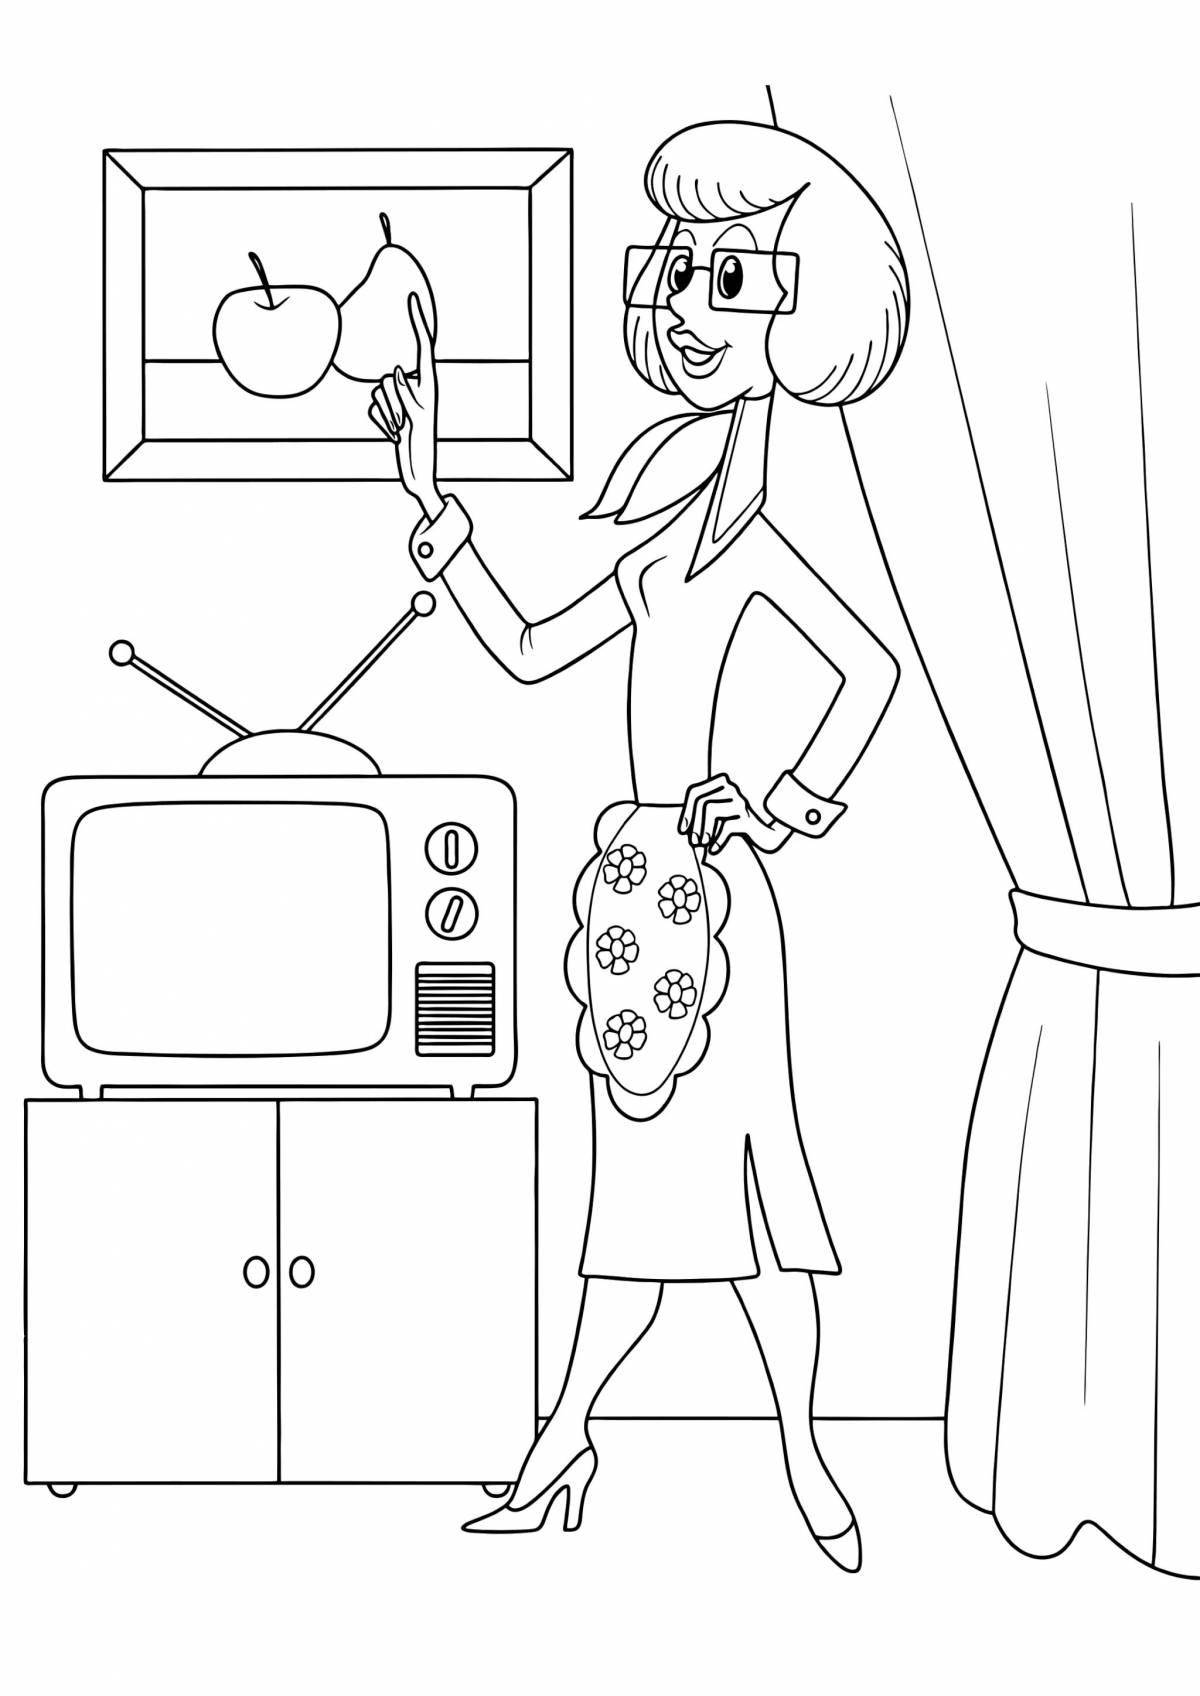 Домохозяйка - рисунок в векторном формате